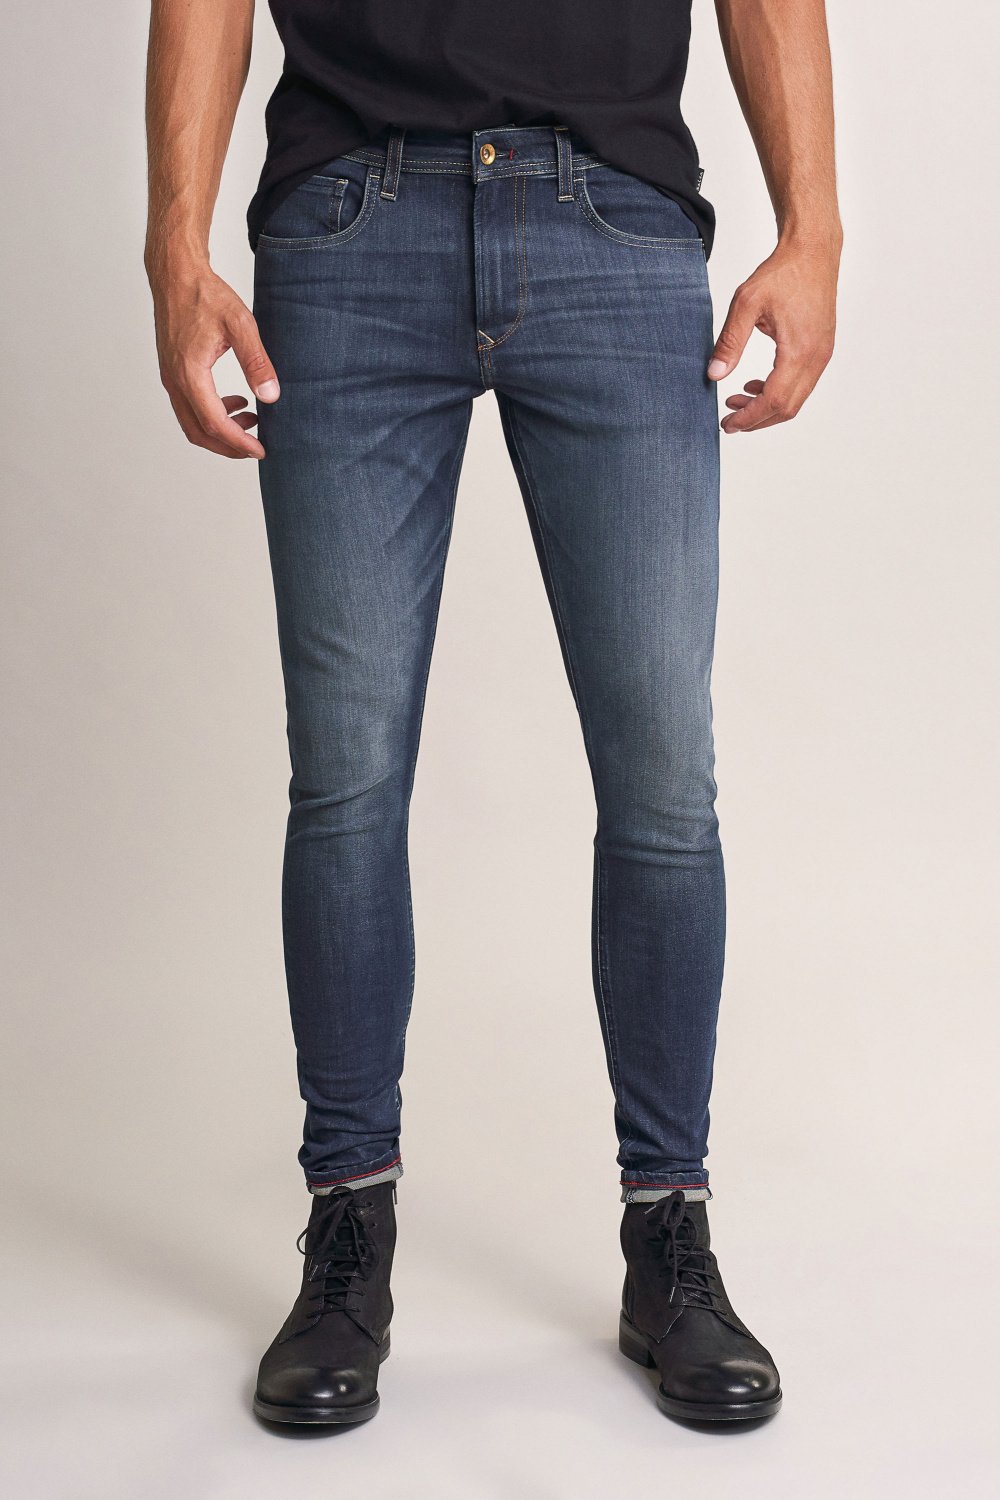 Kurt super skinny vintage jeans - Salsa